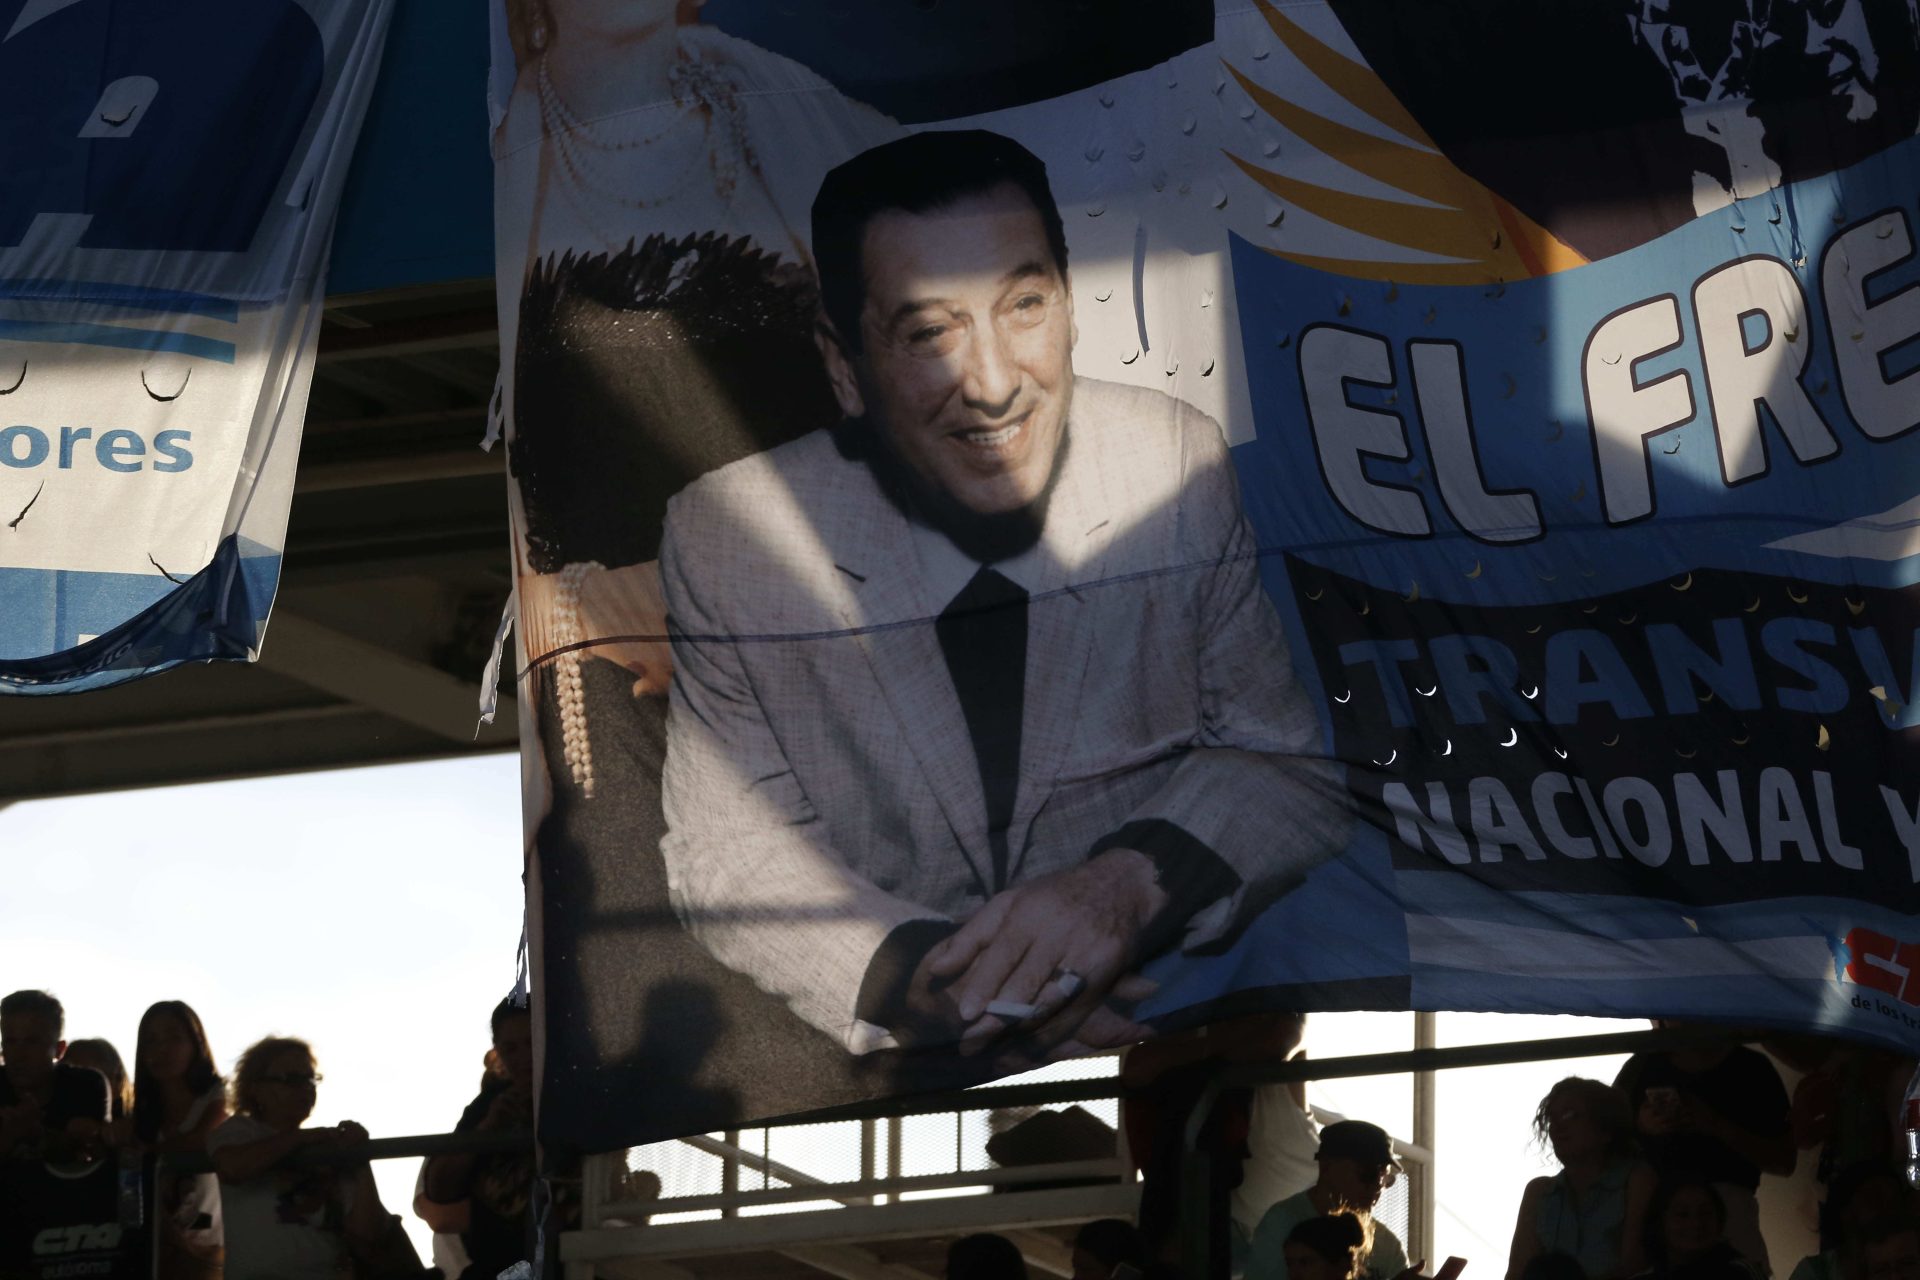 Simpatizantes del peronismo muestran una bandera con la imagen del expresidente argentino Juan Domingo Perón, en una fotografía de archivo. EFE/Demian Alday Estévez